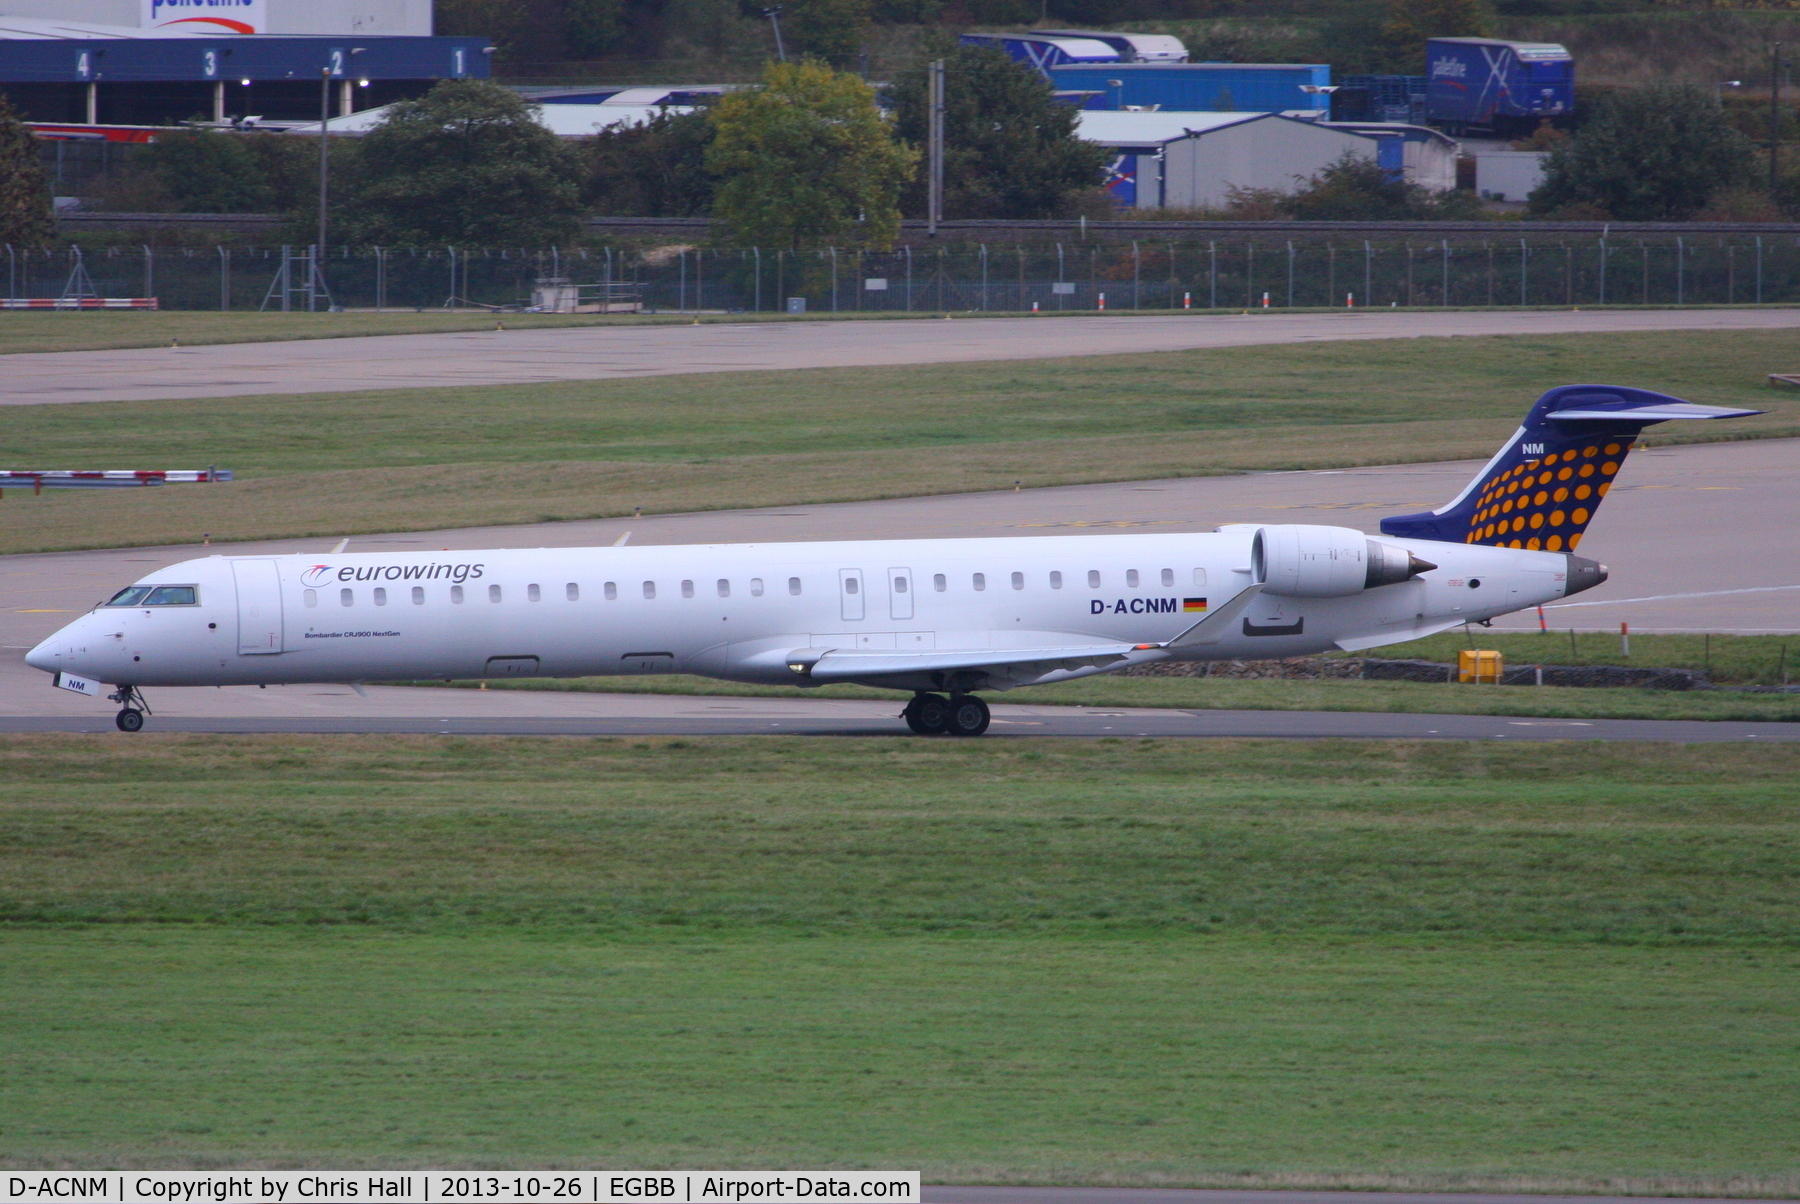 D-ACNM, 2010 Bombardier CRJ-900LR (CL-600-2D24) C/N 15253, Eurowings